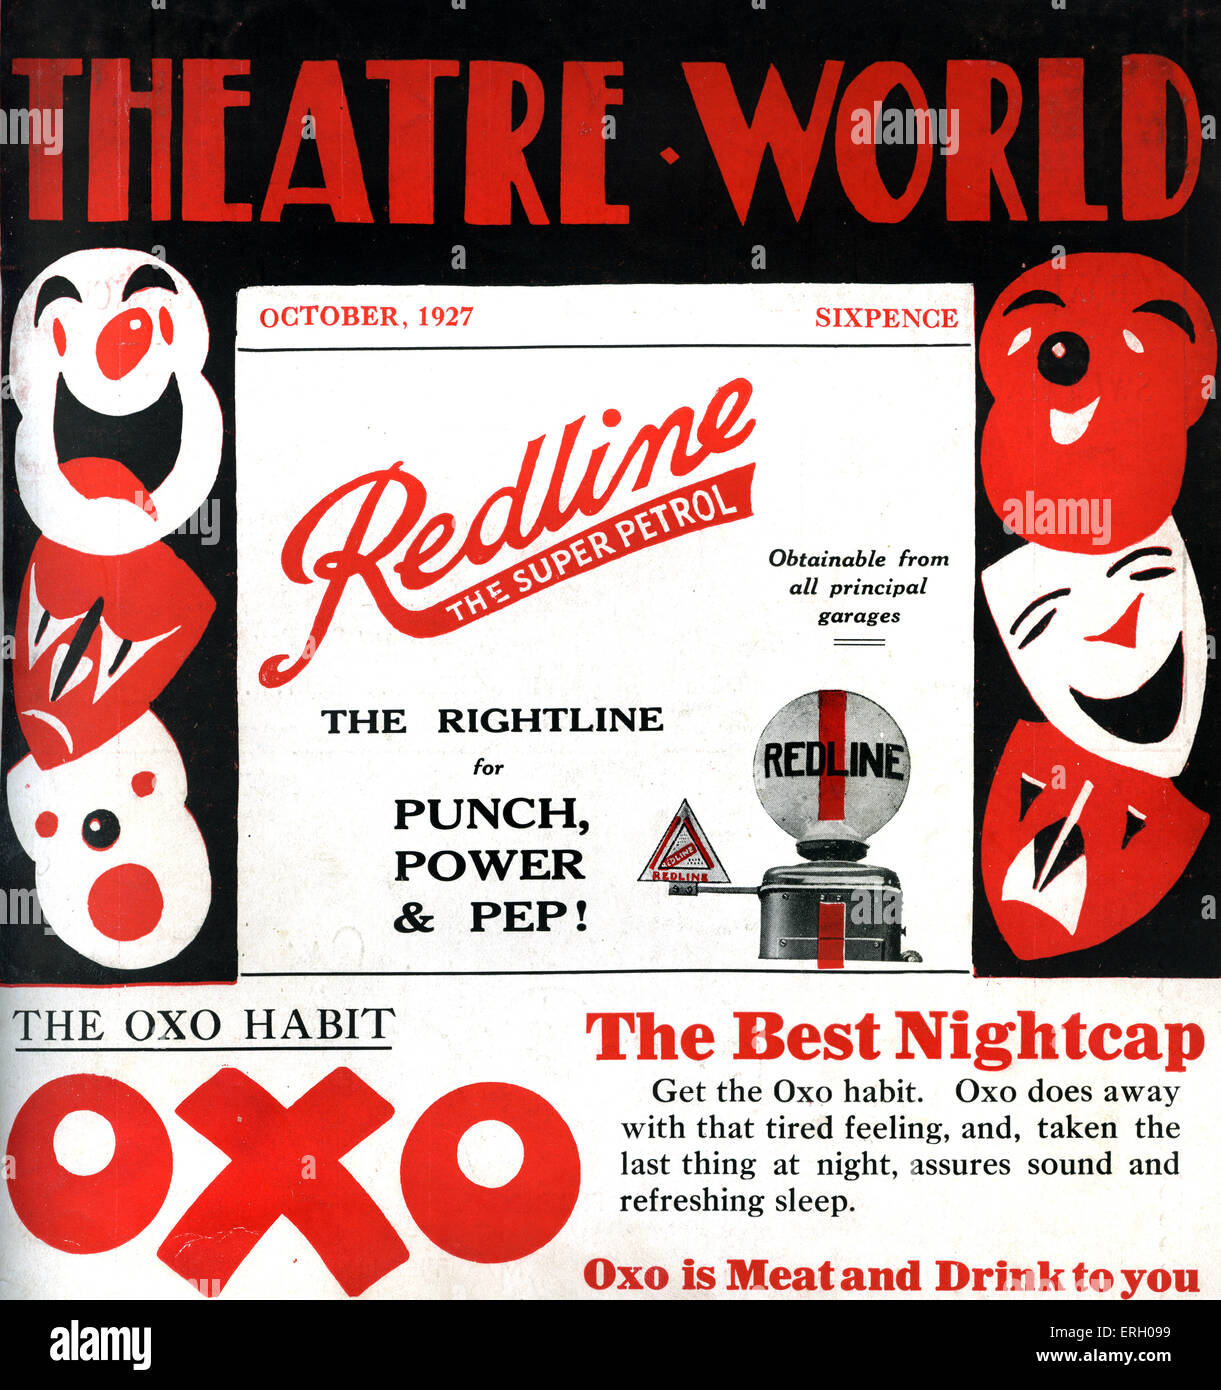 Teatro copertura mondiale Ottobre 1927. La commedia e la tragedia maschere. Foto Stock